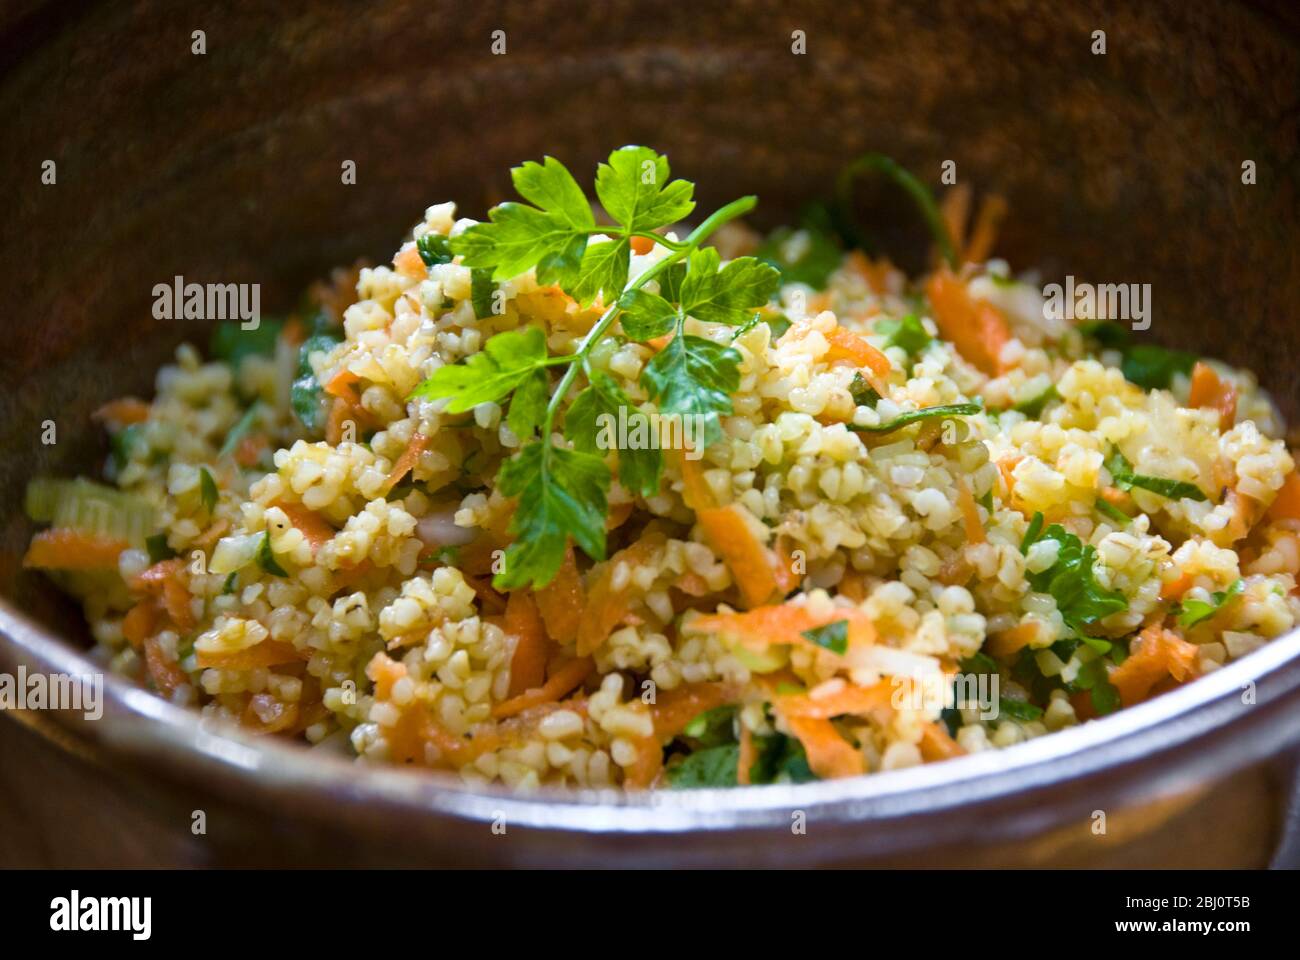 Gesunde Mittagszeit Salat aus Burghulweizen mit geriebener Karotte, Zitronensaft, Olivenöl, gehackte Gurke und Petersilie. - Stockfoto